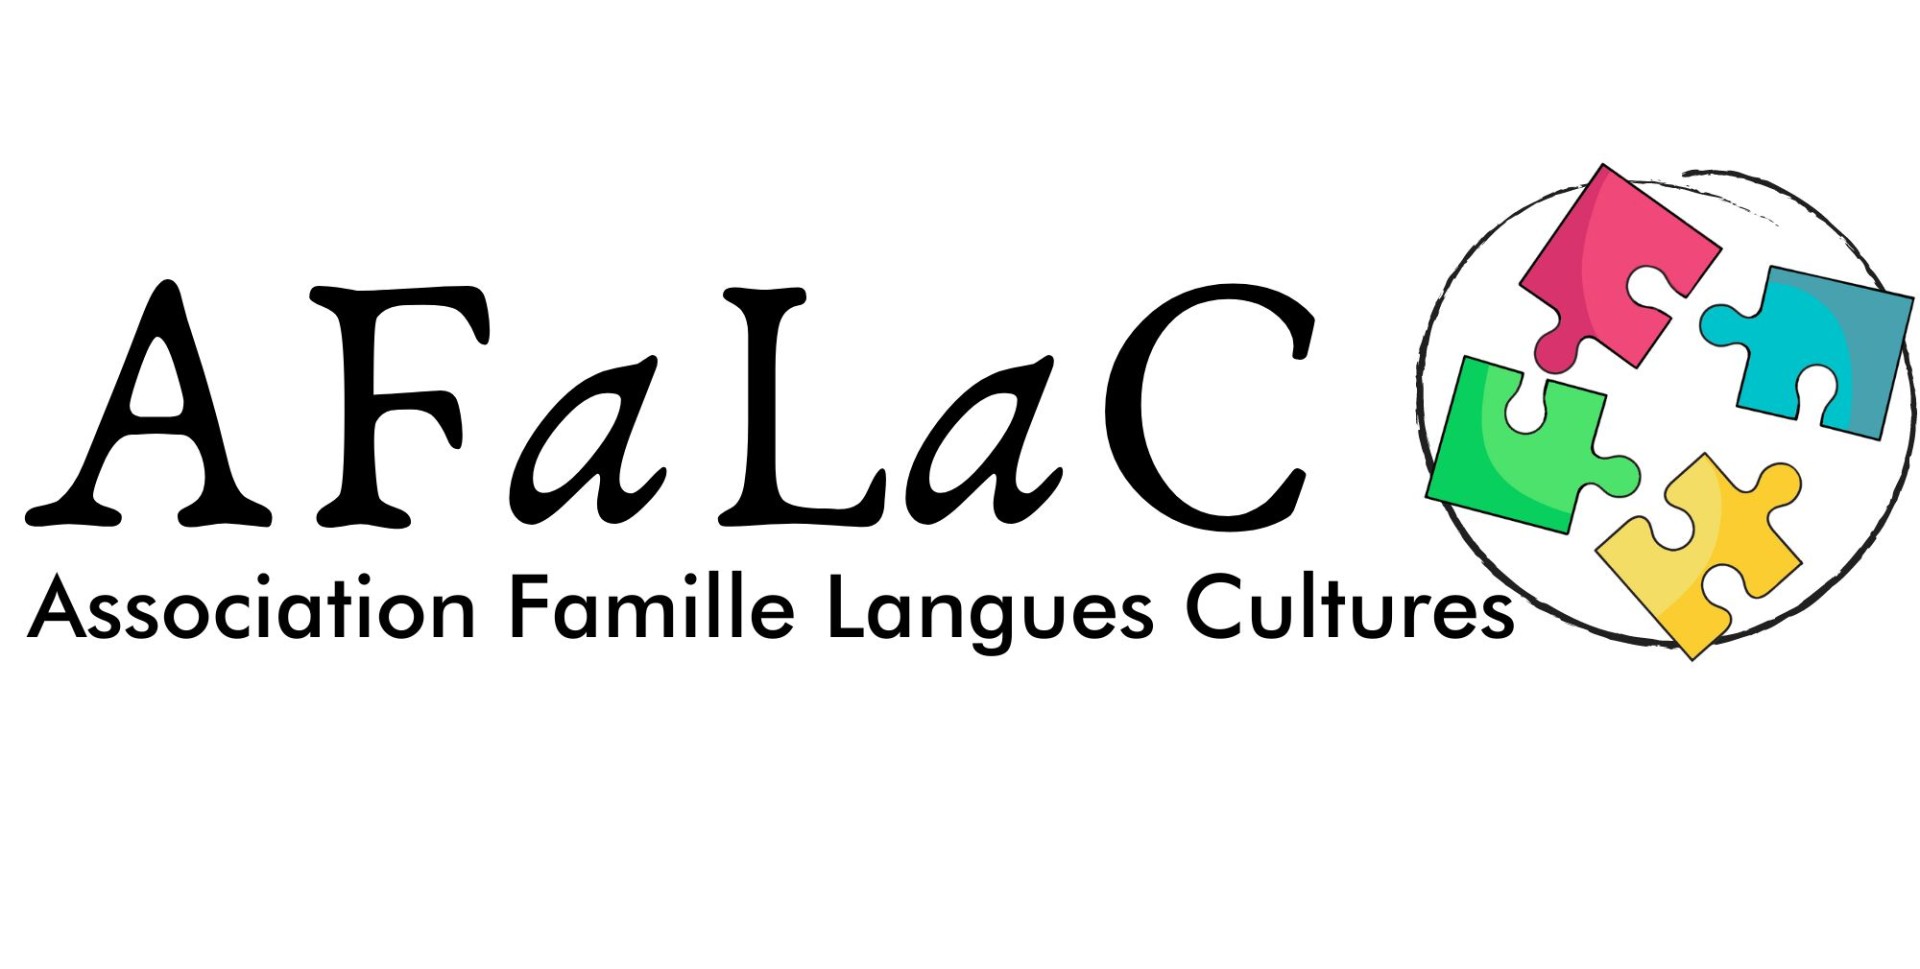 Association Famille Langues Cultures